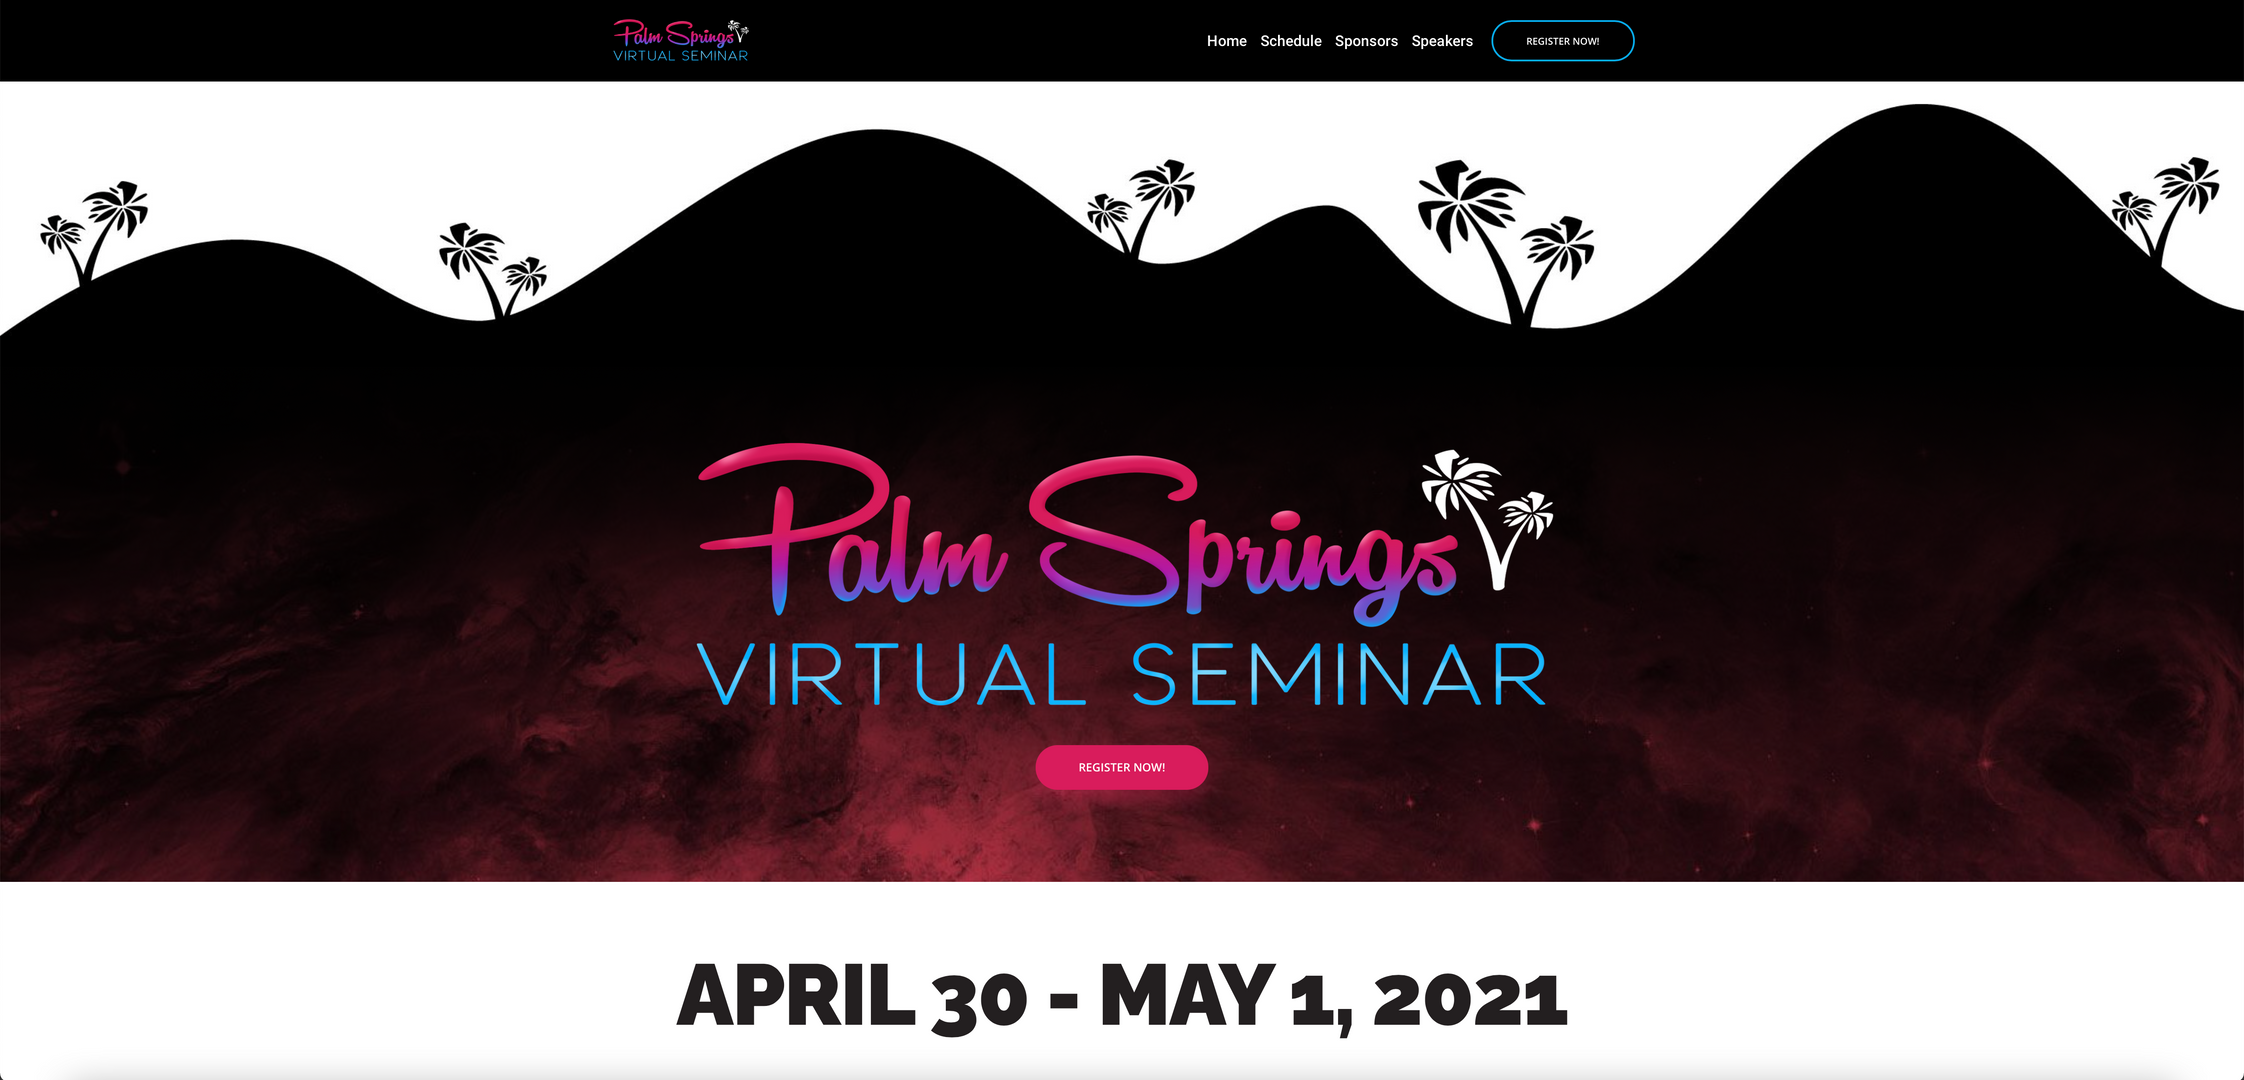 Palm Springs Virtual Seminar